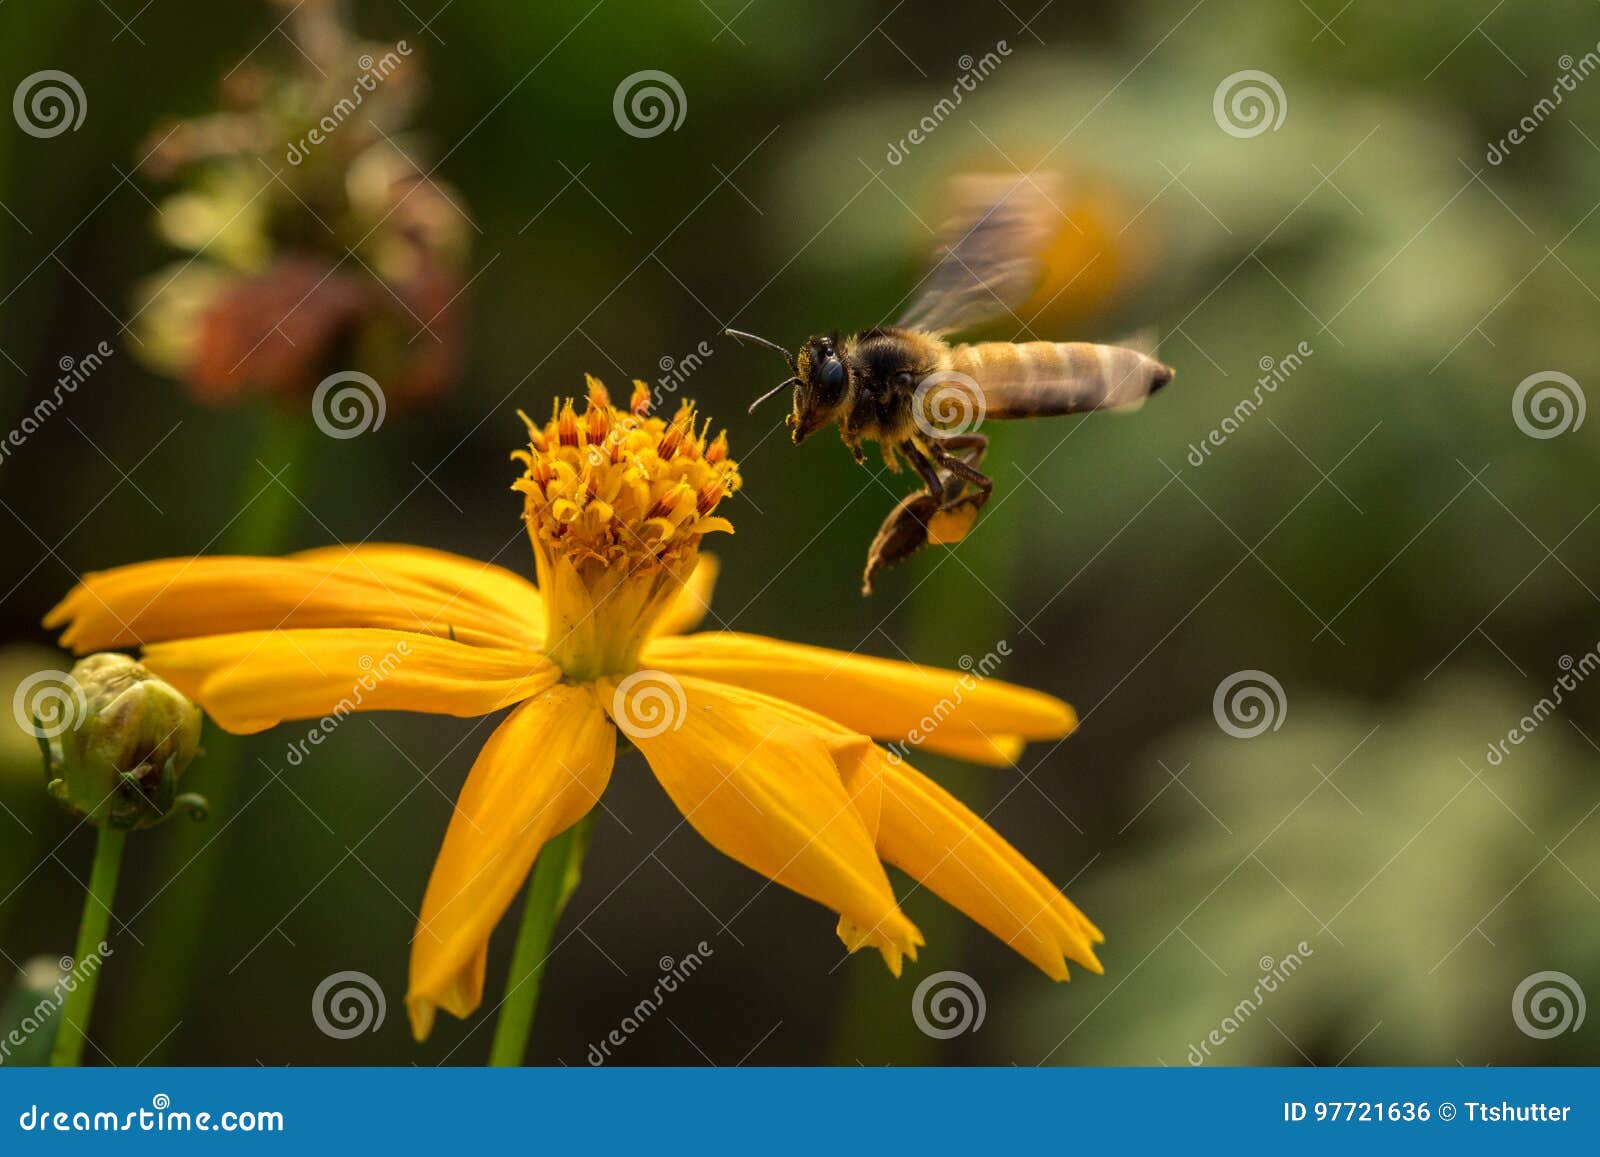 Bi med blommor. Ett biflyg med guling blommar i trädgården